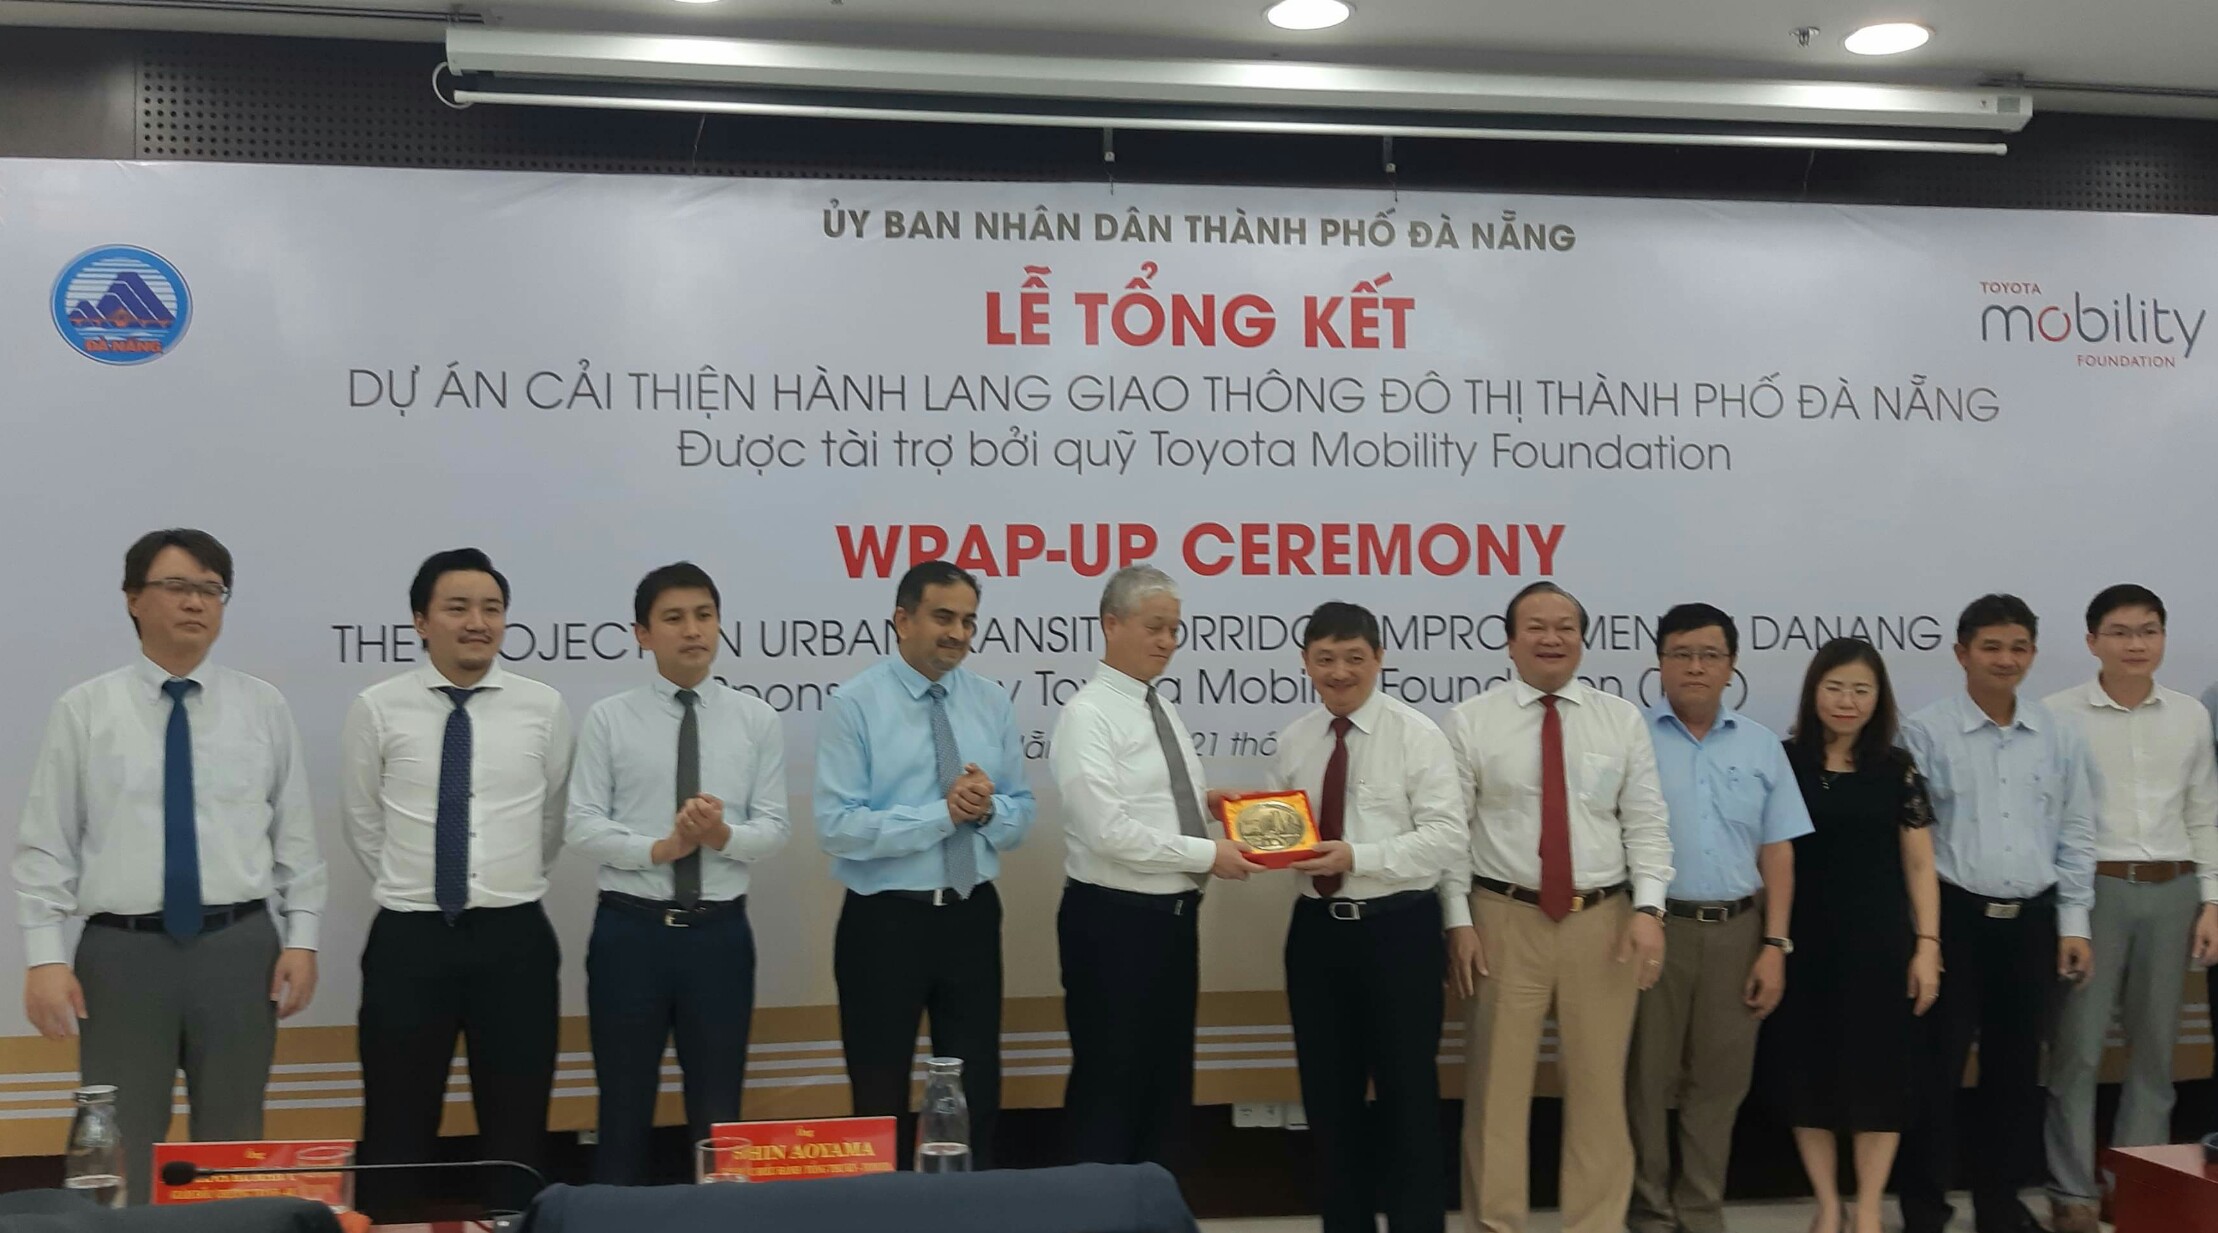 Phó chủ tịch UBND thành phố Đà Nẵng Đặng Việt Dũng tặng quà lưu niệm cho ngài